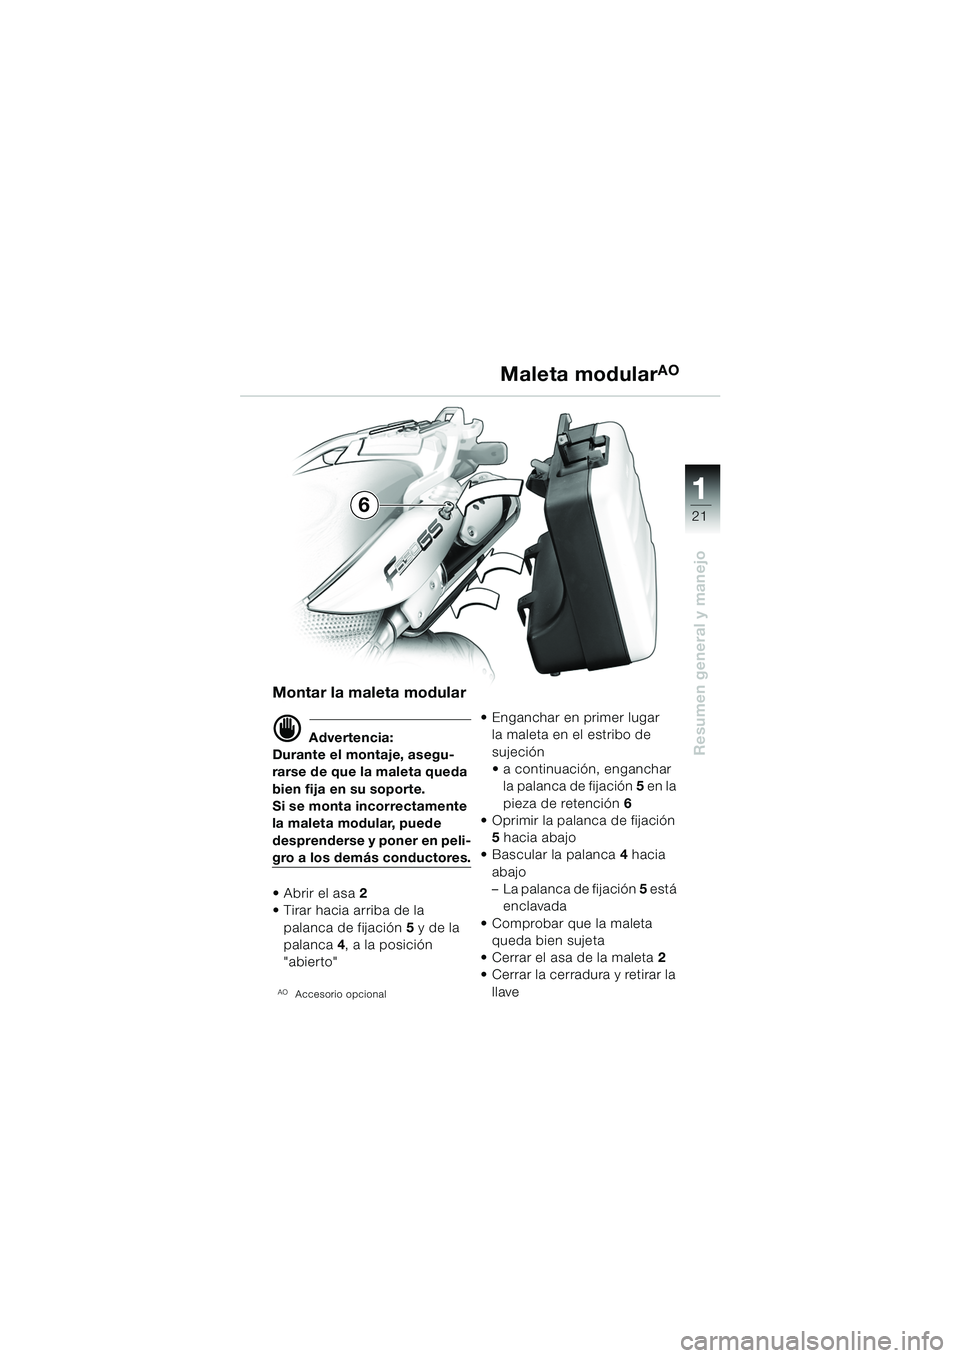 BMW MOTORRAD F 650 GS DAKAR 2003  Manual de instrucciones (in Spanish) 111
21
Resumen general y manejo
Maleta modularAO
Montar la maleta modular
d Advertencia:
Durante el montaje, asegu-
rarse de que la maleta queda 
bien fija en su soporte.
Si se monta incorrectamente 
